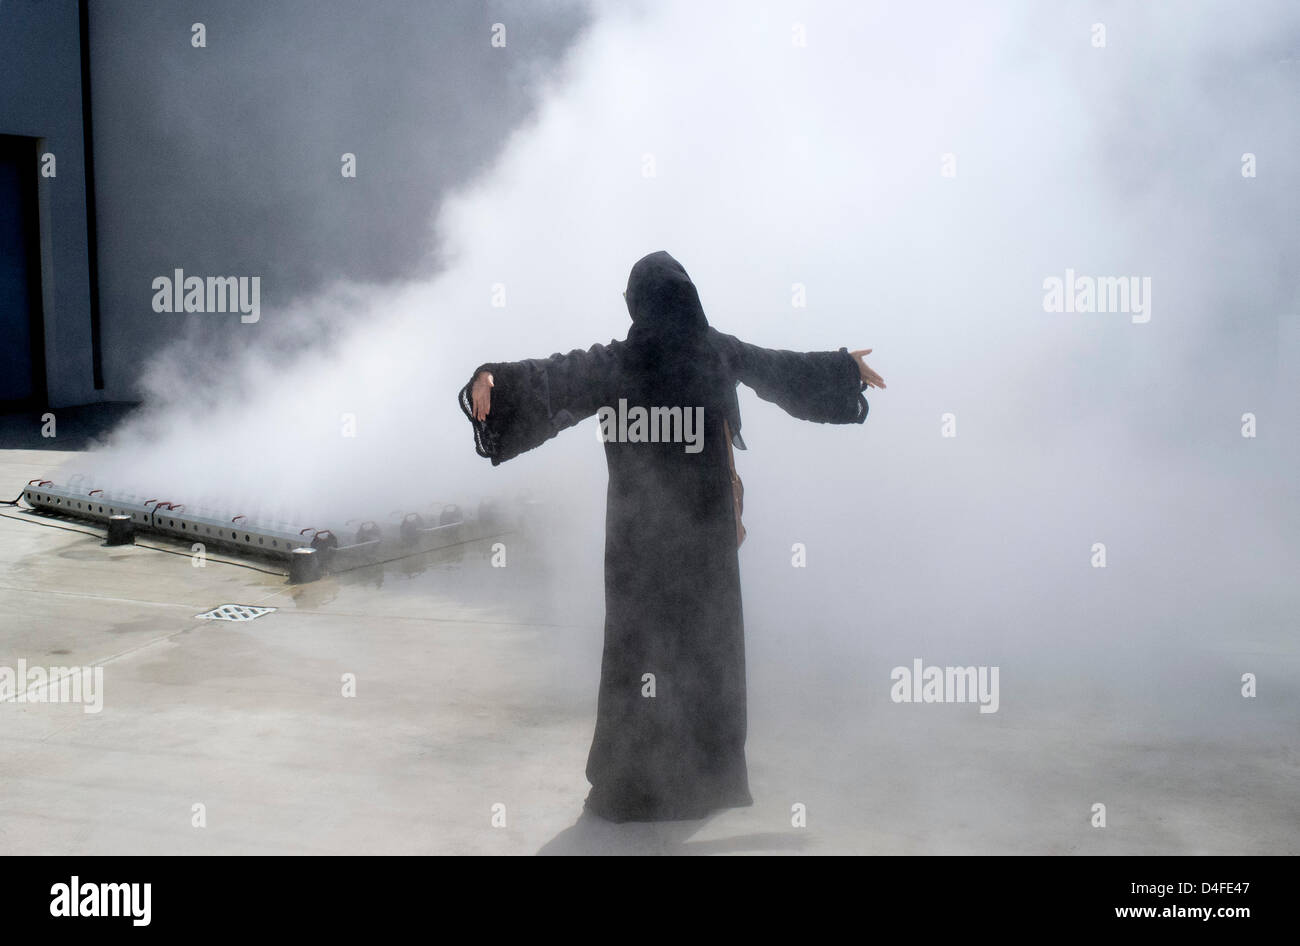 Besucherin in Black Abaya, die sich am Eröffnungstag des 11. in den Vereinigten Arabischen Emiraten stattfindenden Kunst- und Kulturfestivals Sharjah Biennial 2013 unter Wassernebel abkühlt Stockfoto